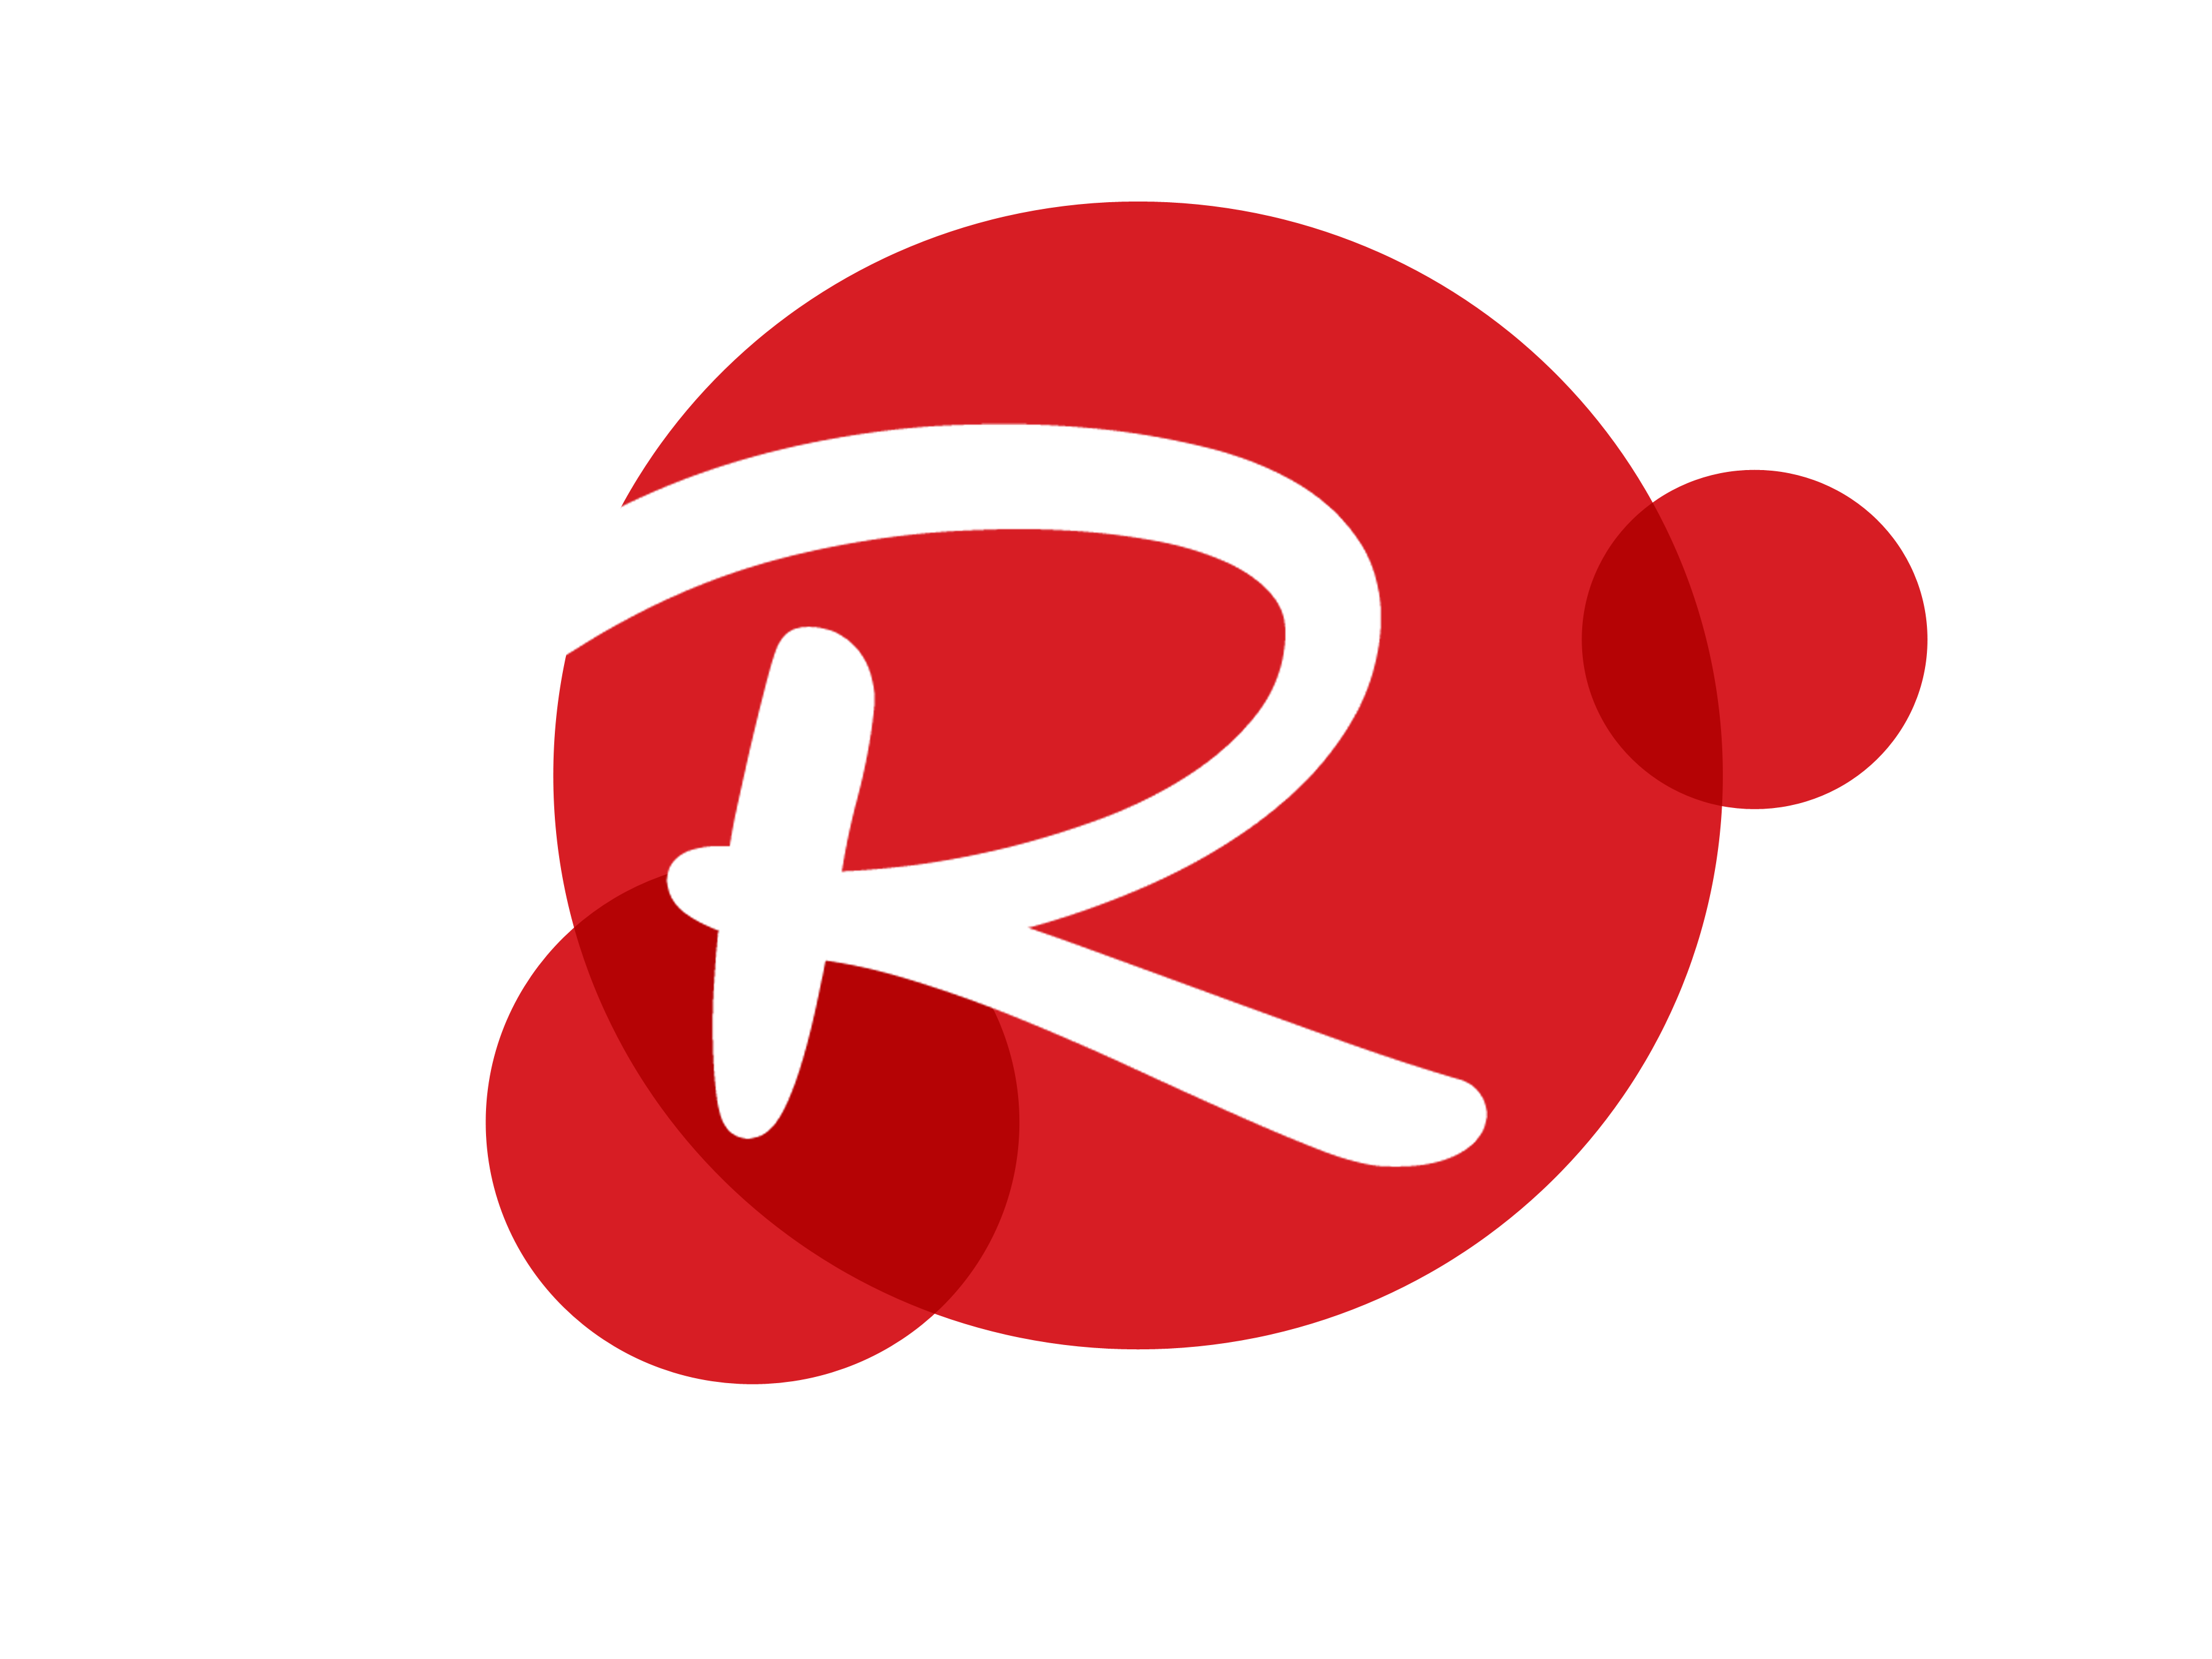 r-logo-image-download-logo-logowiki